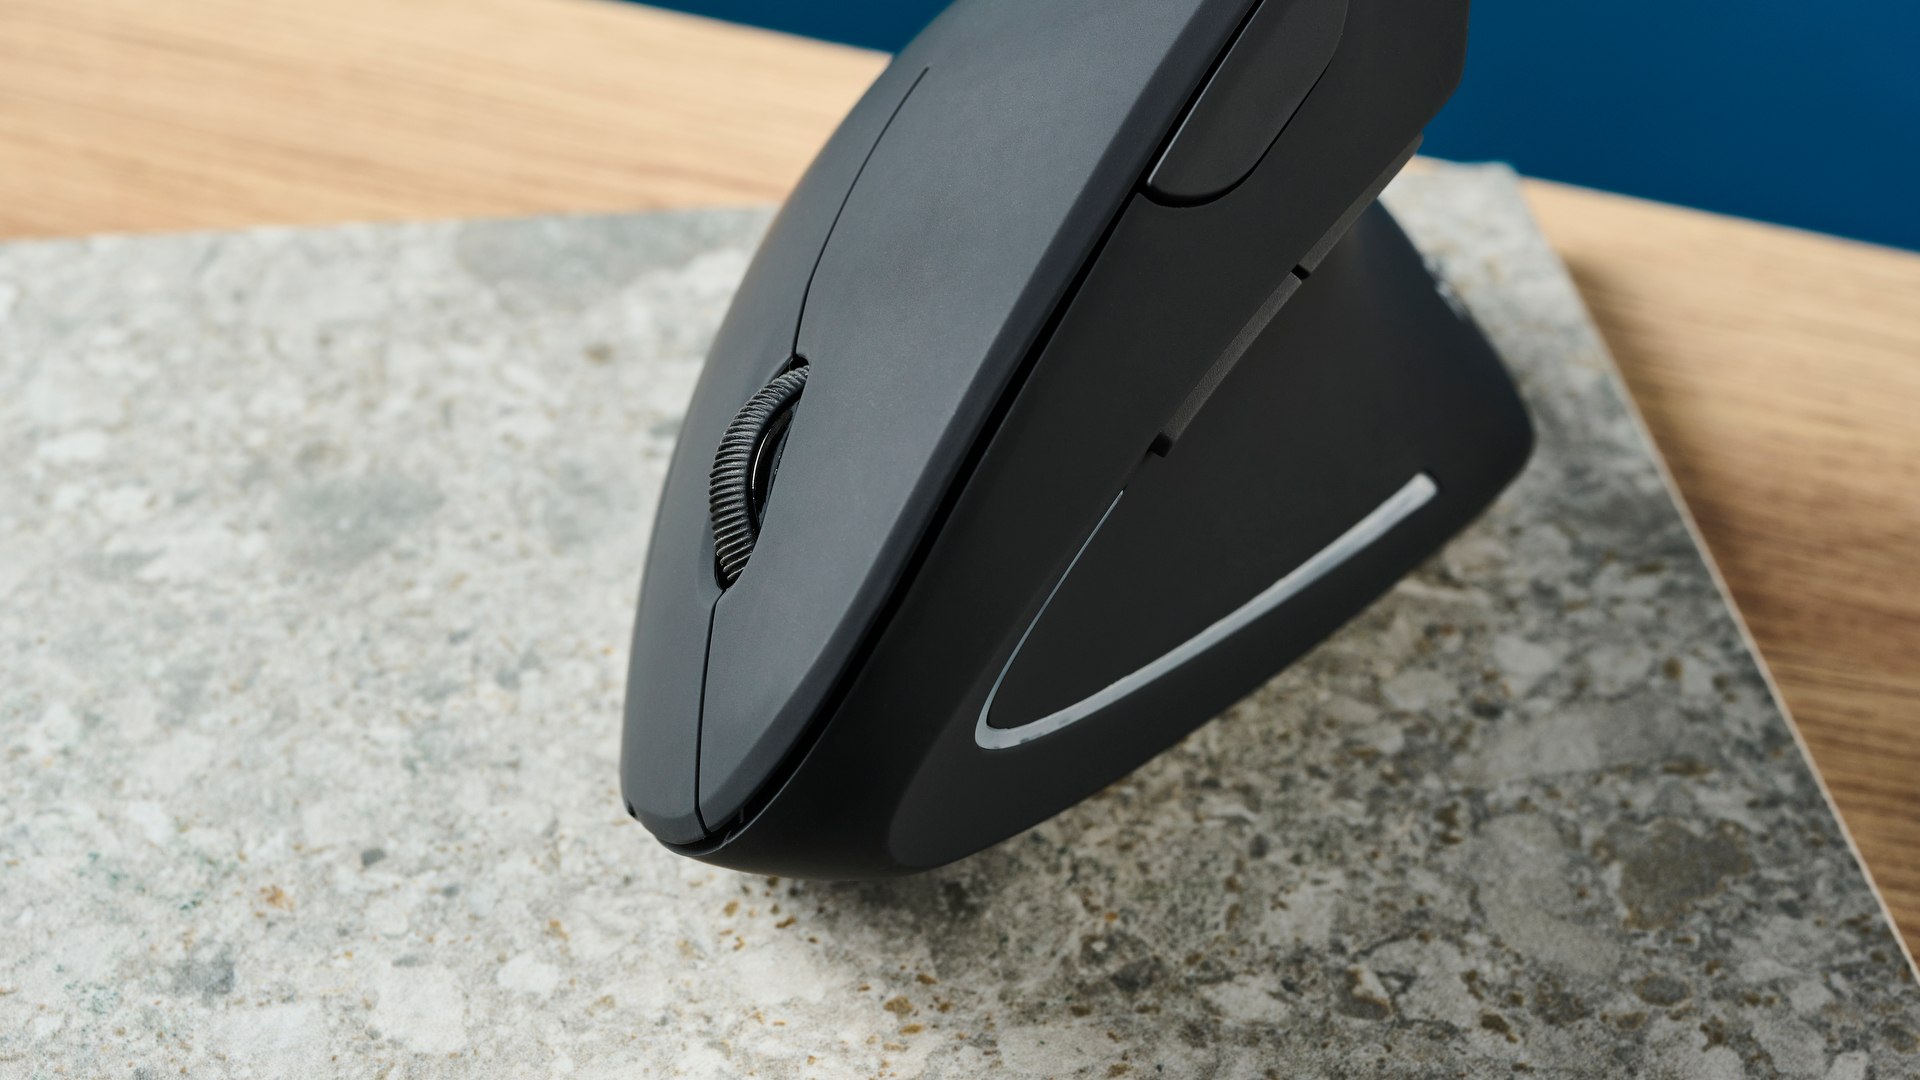 De Anker 2.4G Wireless Vertical Ergonomic Mouse op een stenen oppervlak met een blauwe muur op de achtergrond